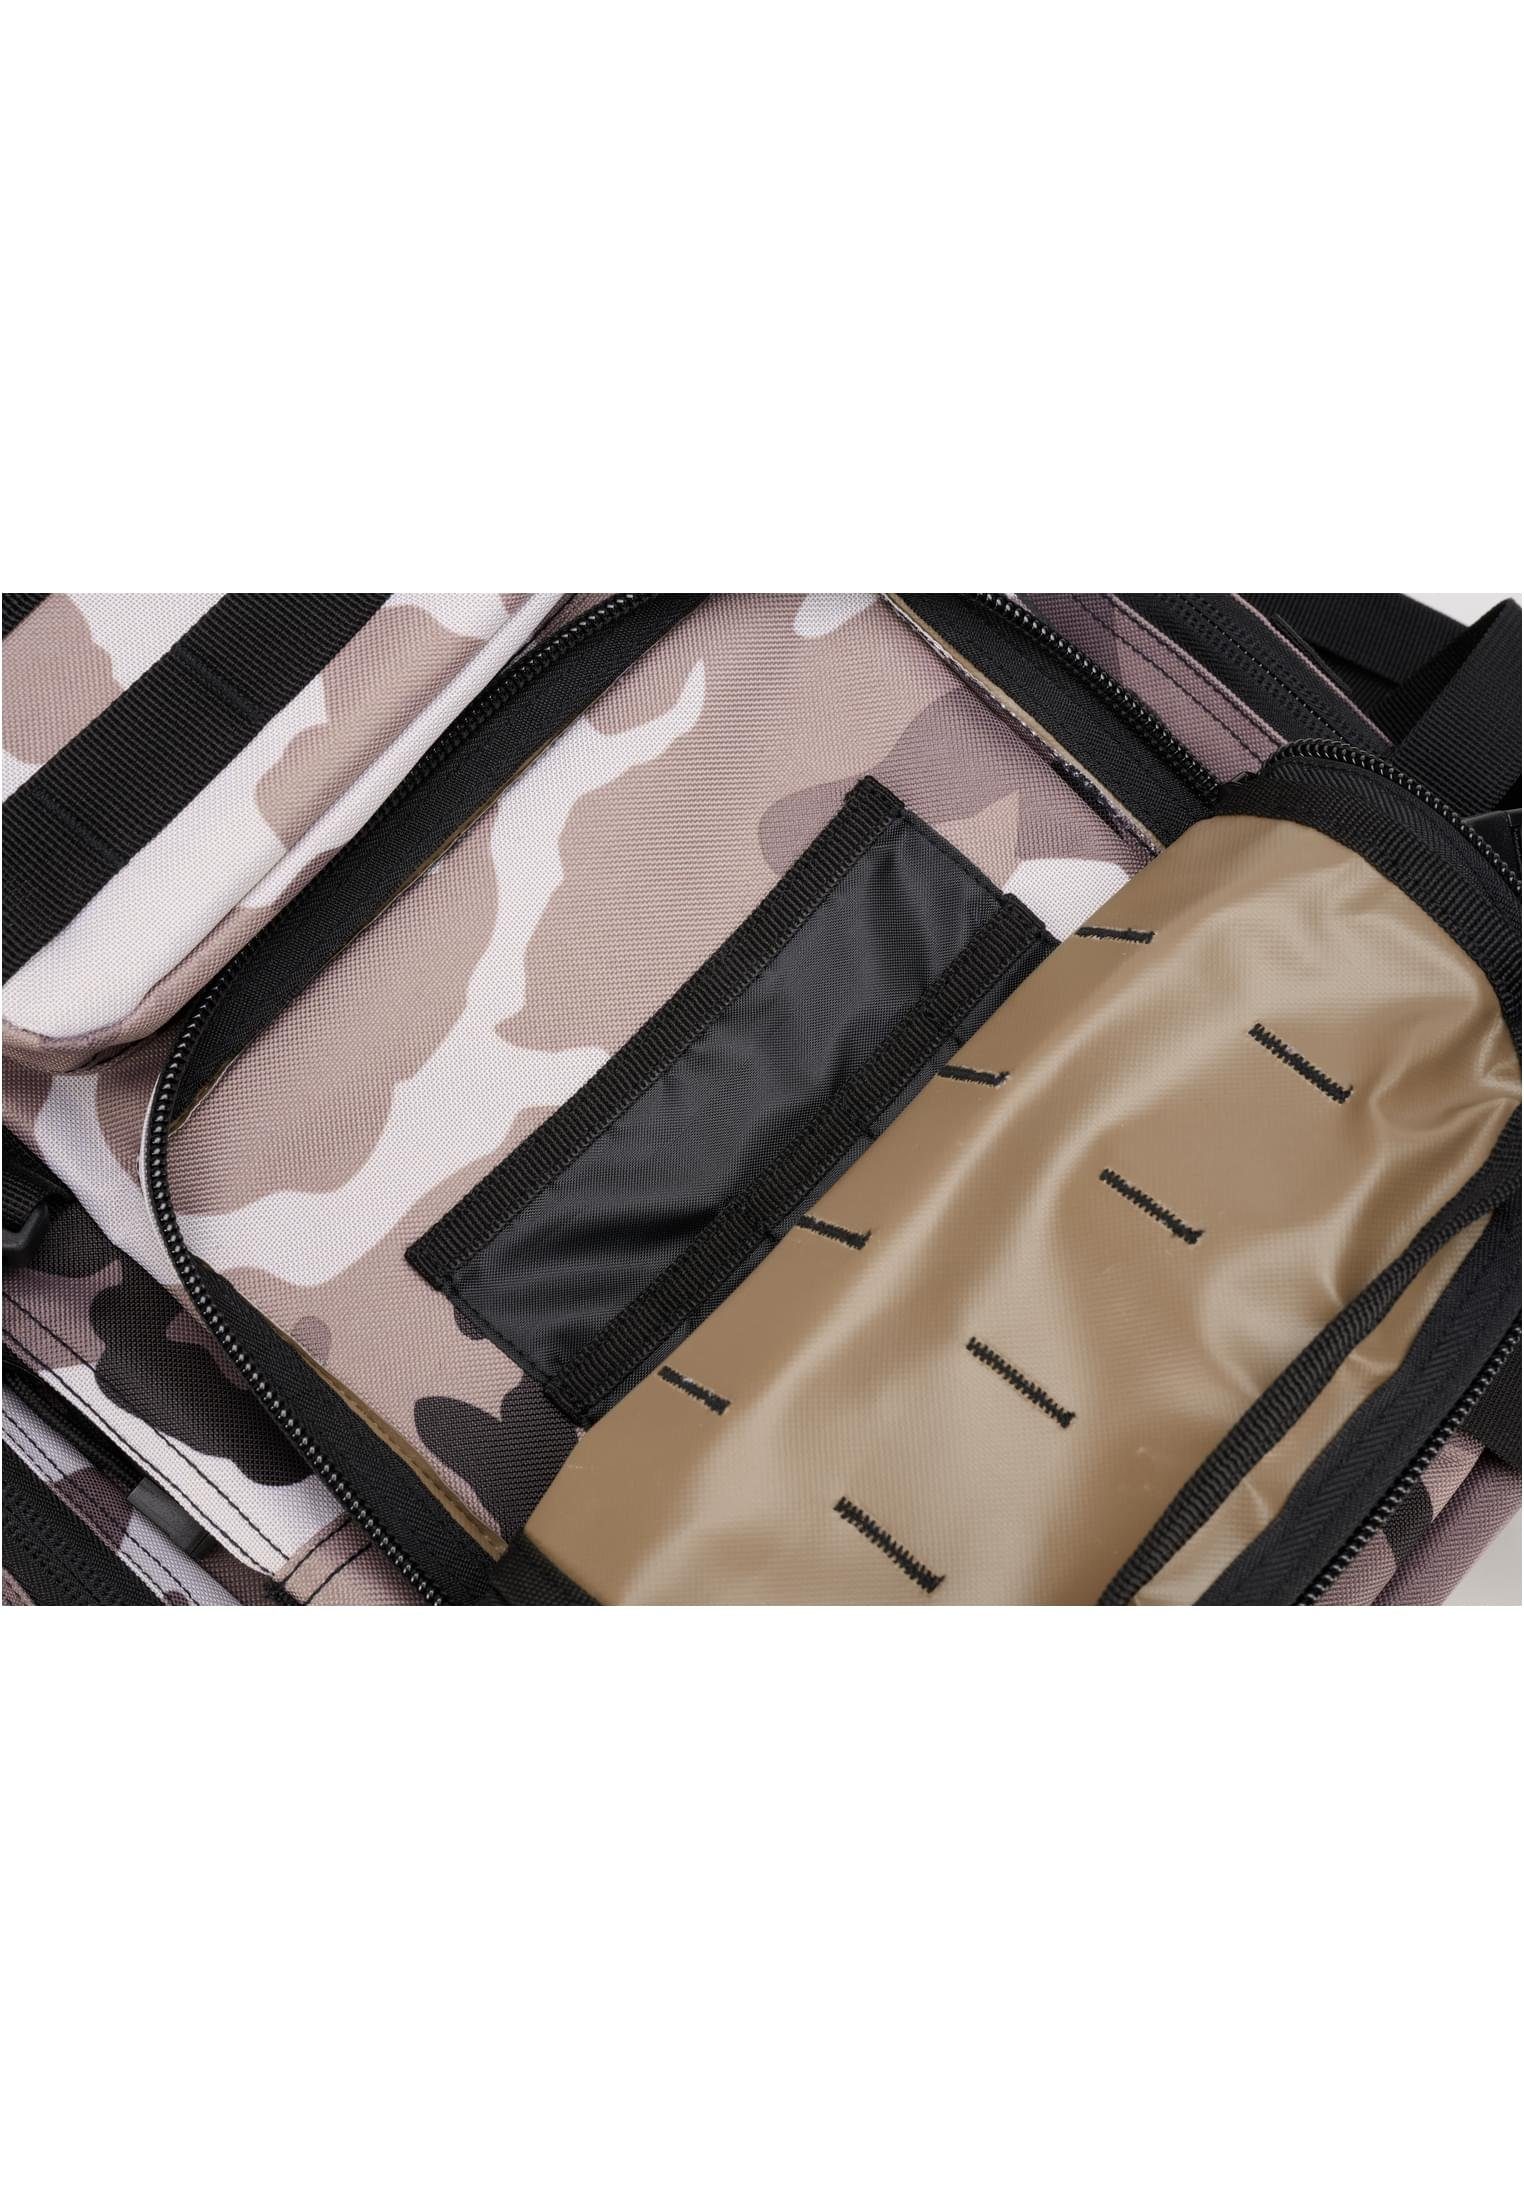 Cooper Backpack Accessoires dark US Rucksack Brandit grey Large camo